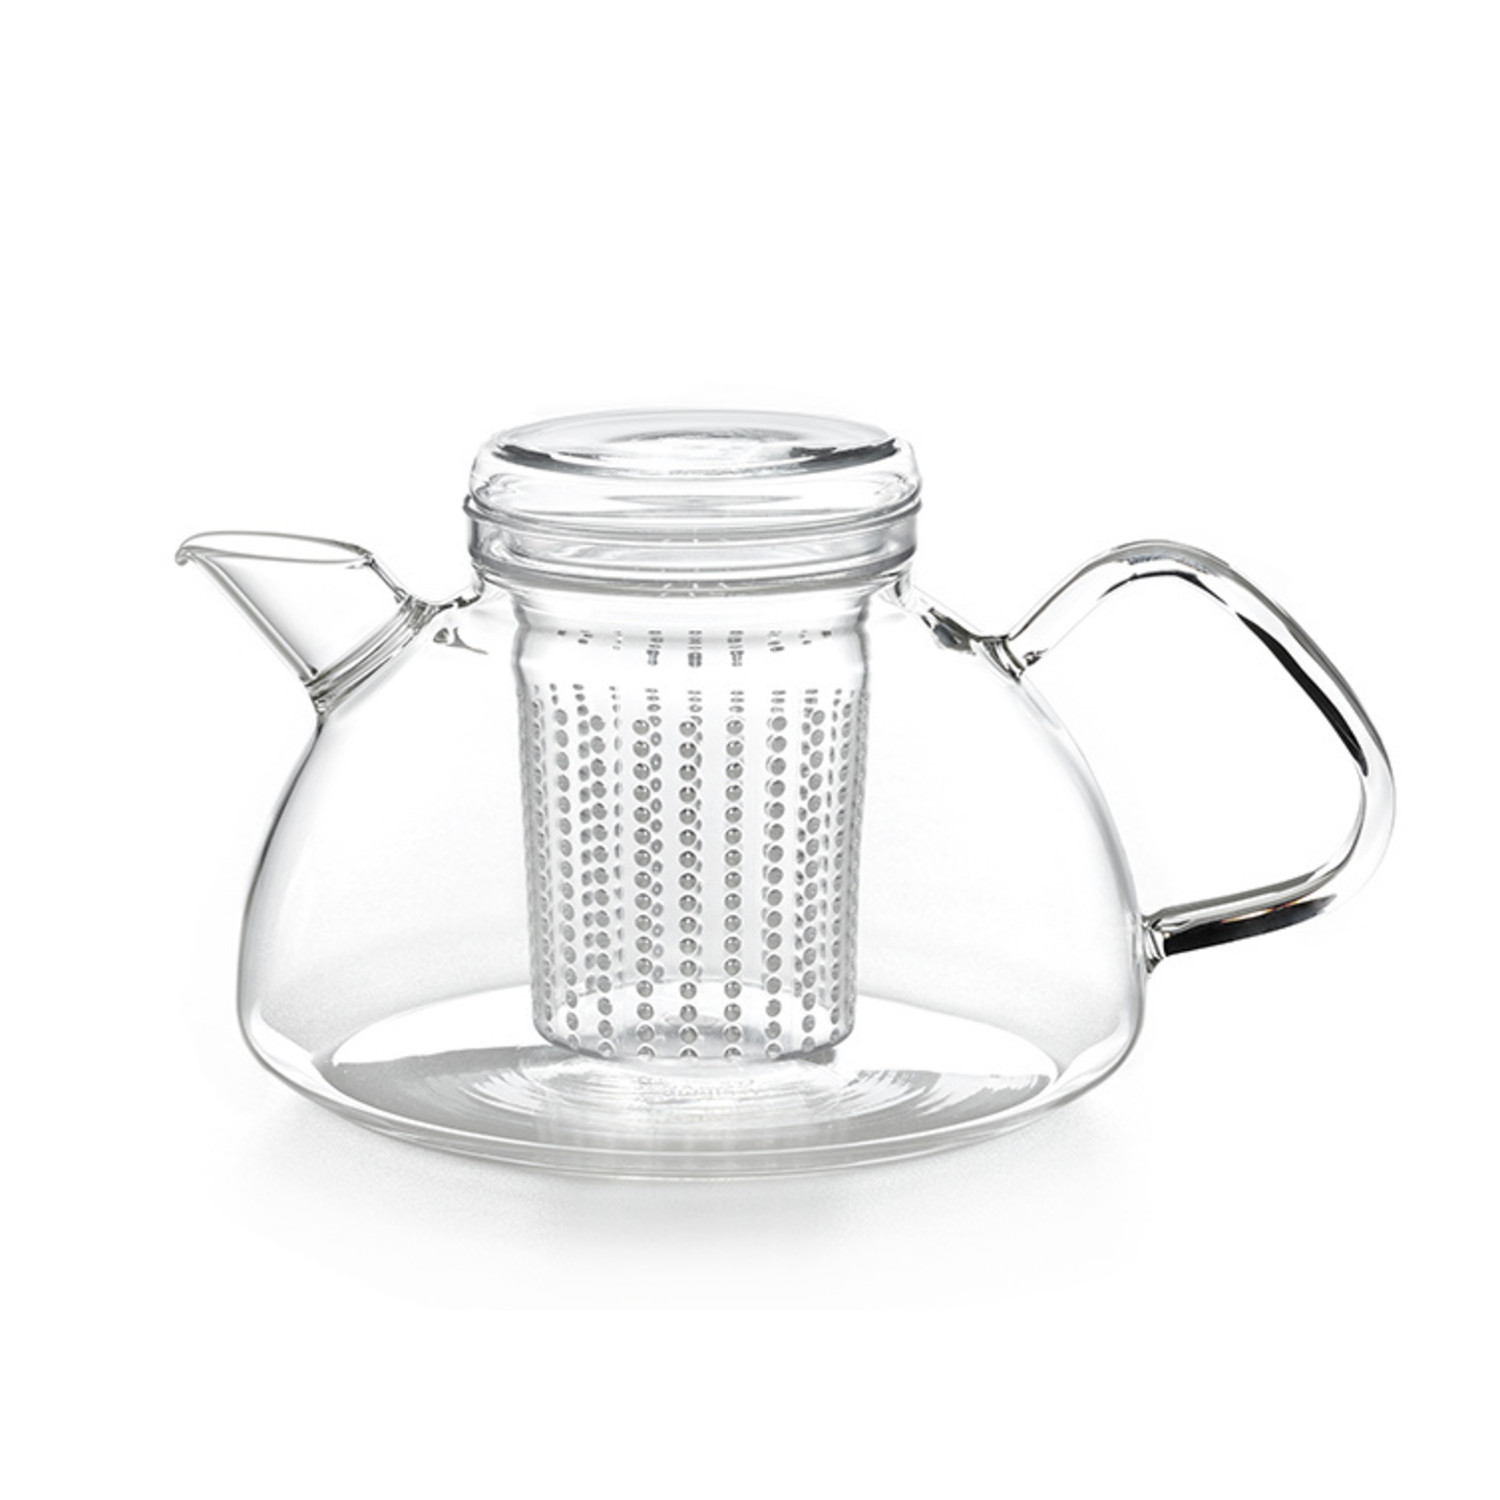 Het is goedkoop boezem Evalueerbaar Glazen theepot 1,2 liter met filter - Coffee and Tea Brokers